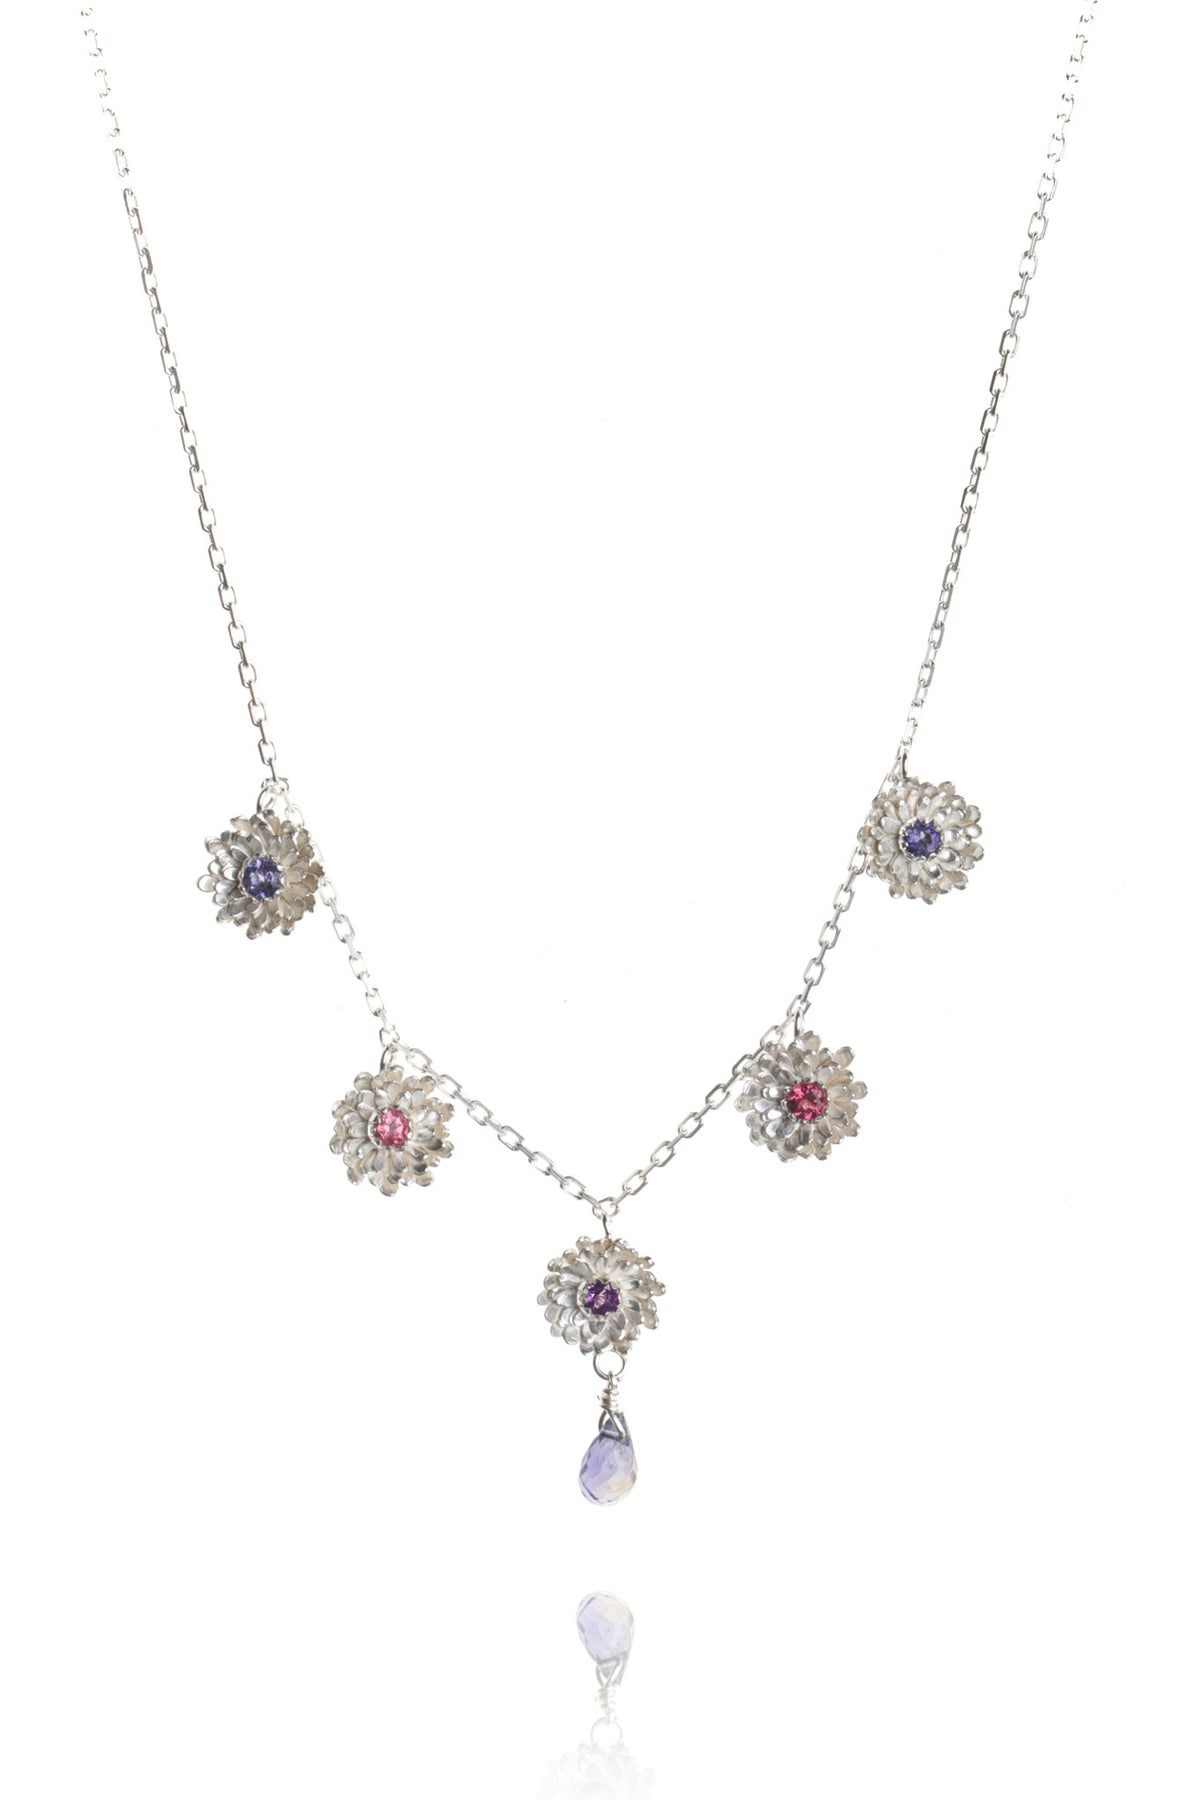 Five Dahlia Flowers Necklace